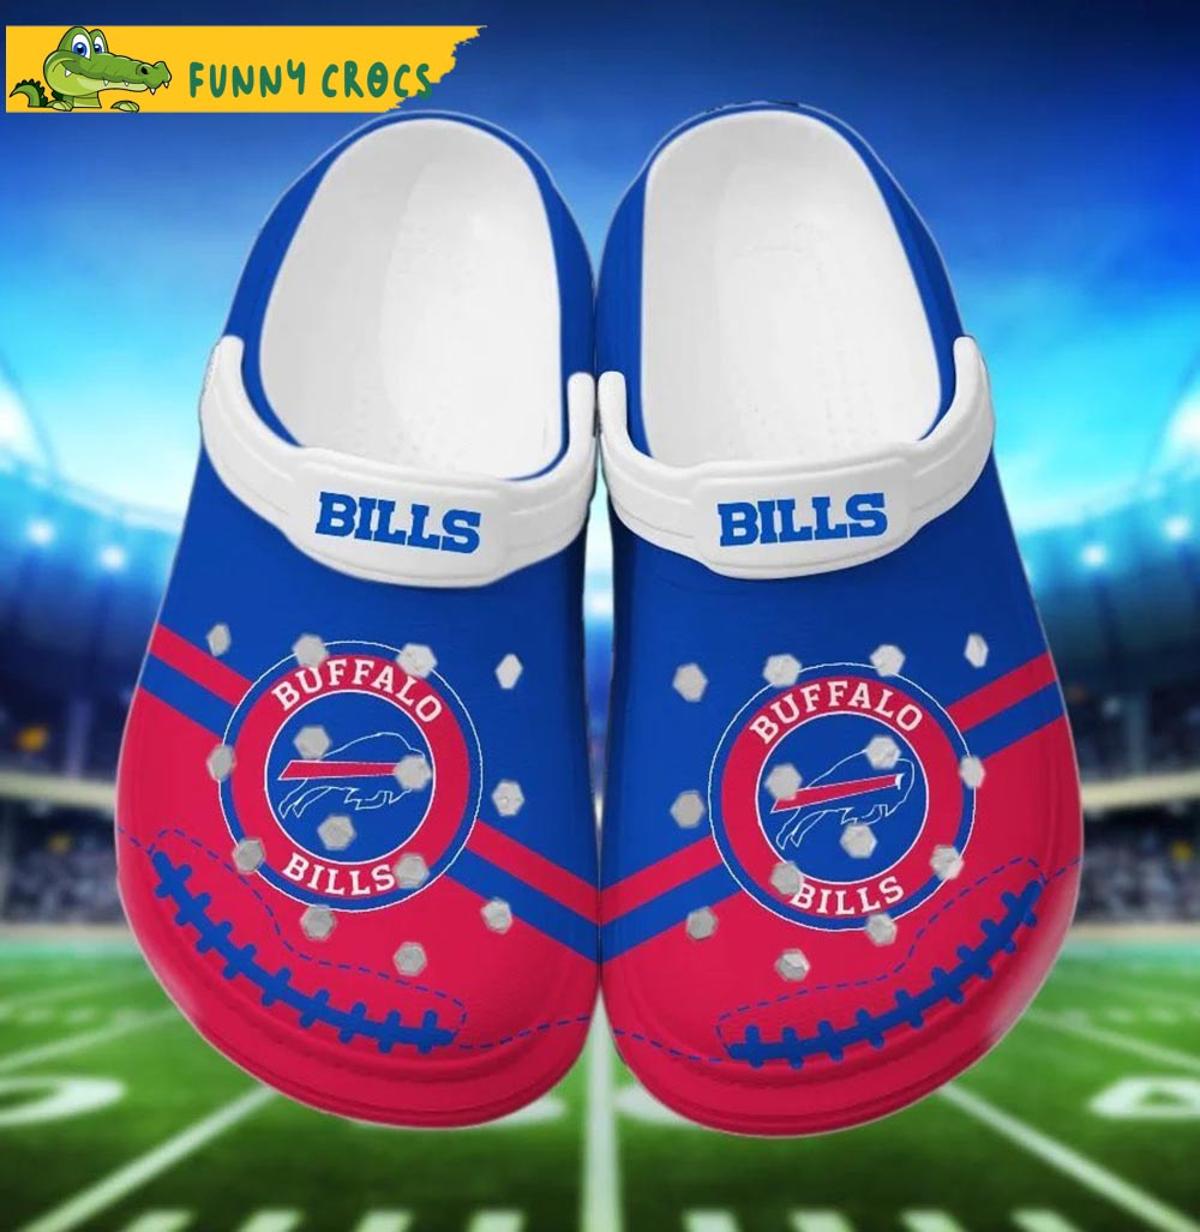 Funny Buffalo Bills Crocs Sandals